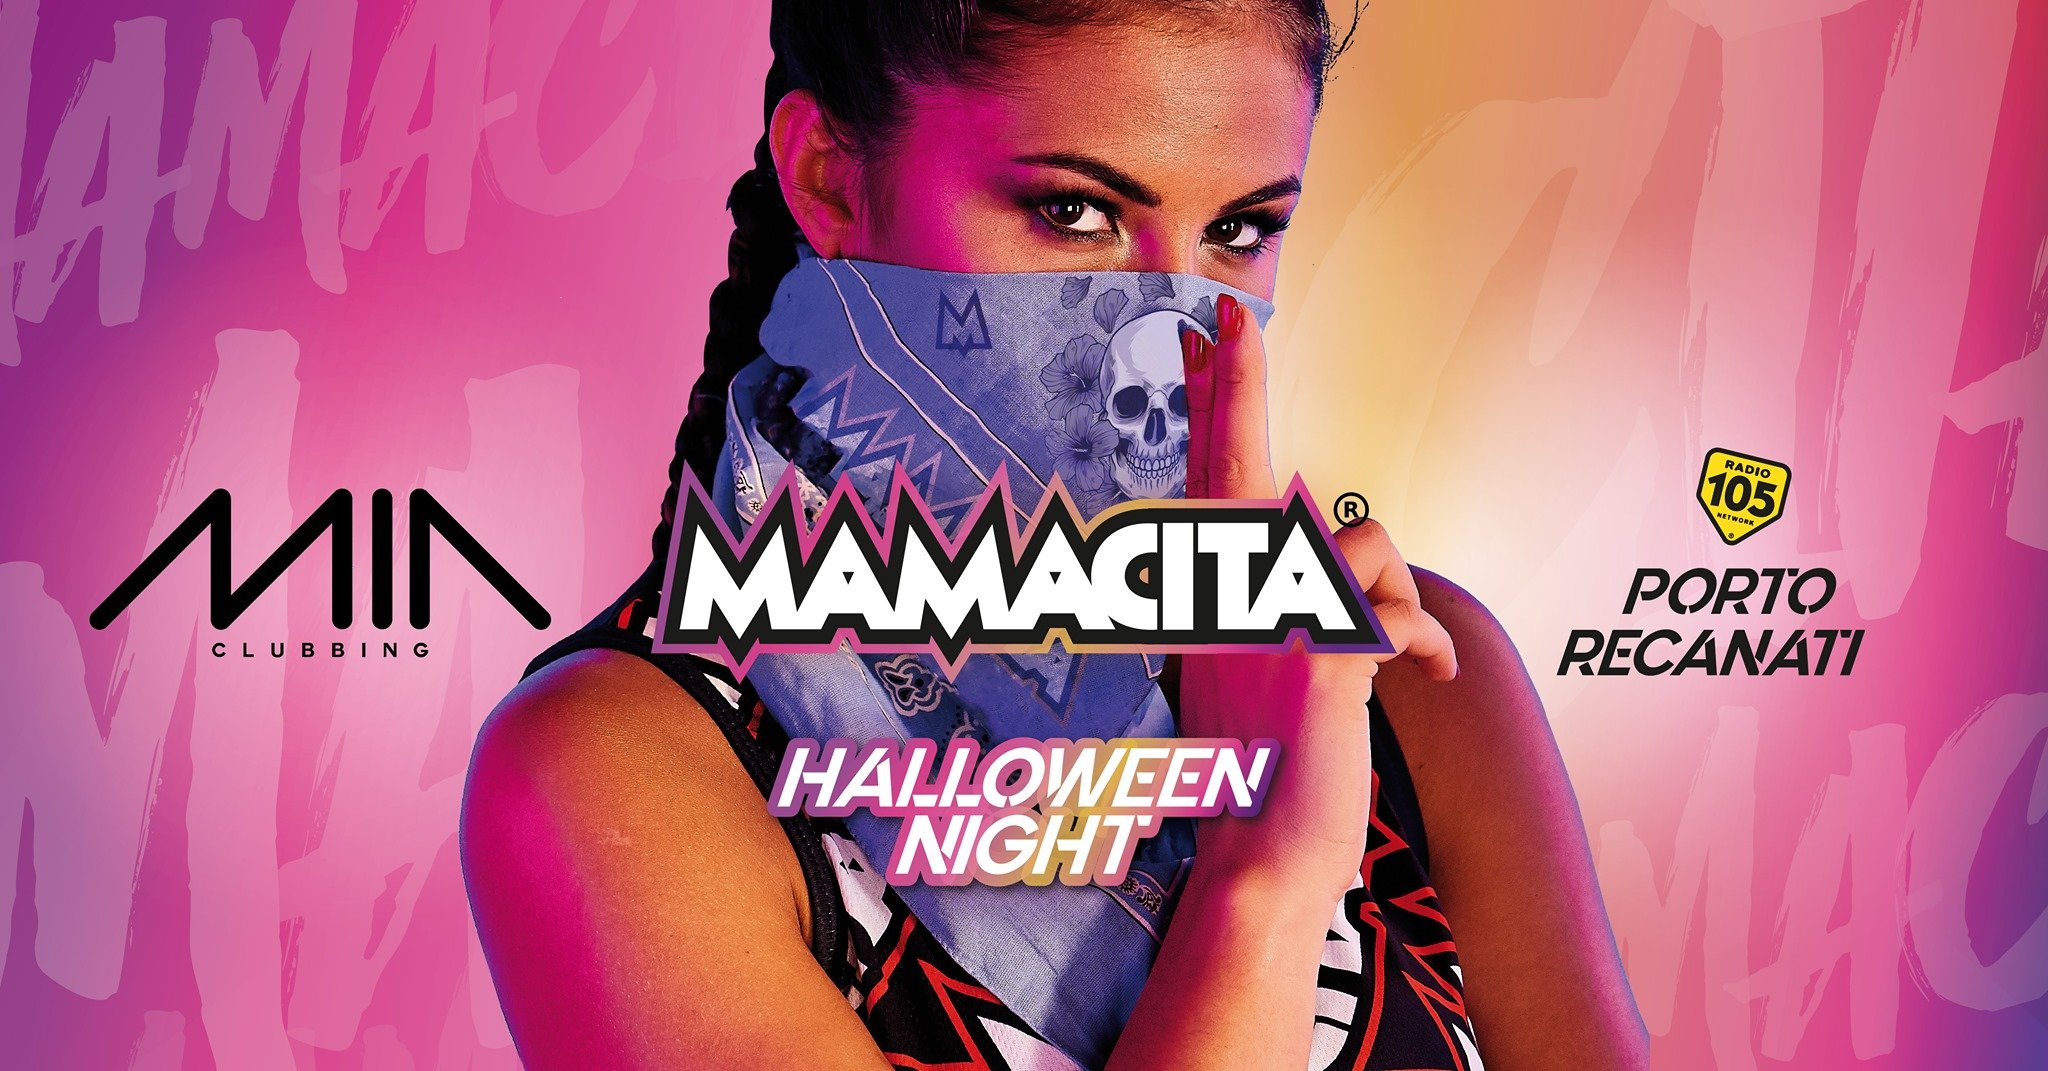 Halloween 2019 Mamacita Mia Clubbing Porto Recanati